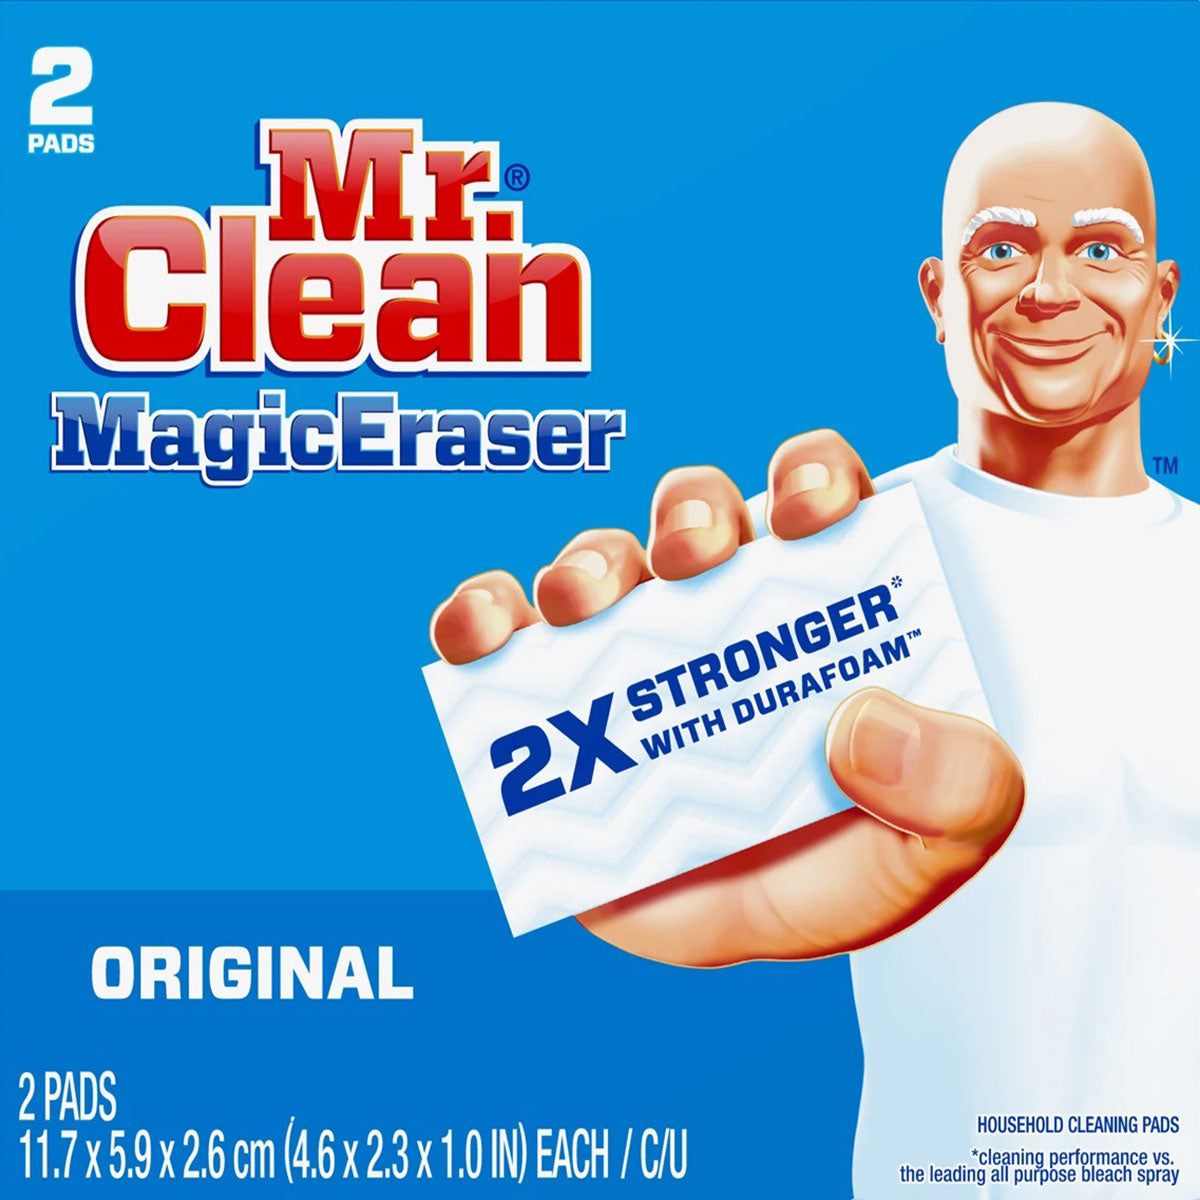 Limpiador multiuso Almohadillas / Pads Borrador Mágico (Magic Eraser) Mr. Clean 2 unidades